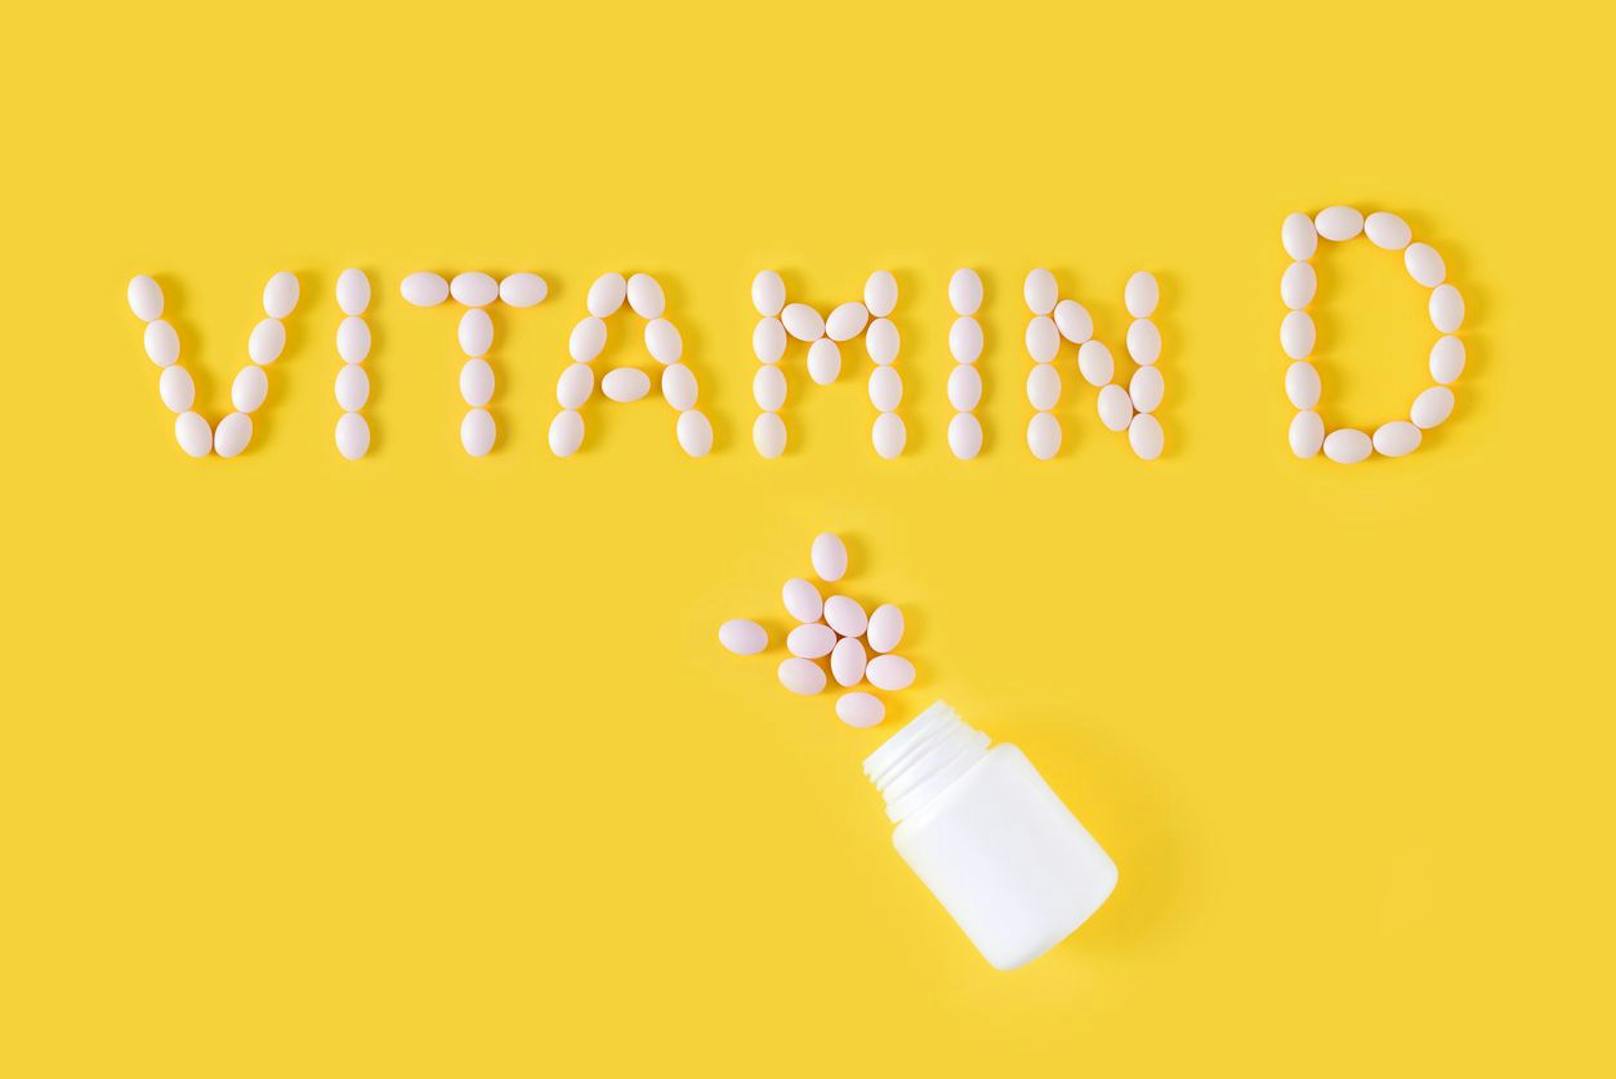 Nur eine Blutuntersuchung kann den Vitamin D-Spiegel genau bestimmen. Anhand dessen entscheidet der Arzt, ob&nbsp;supplementiert werden sollte oder nicht.